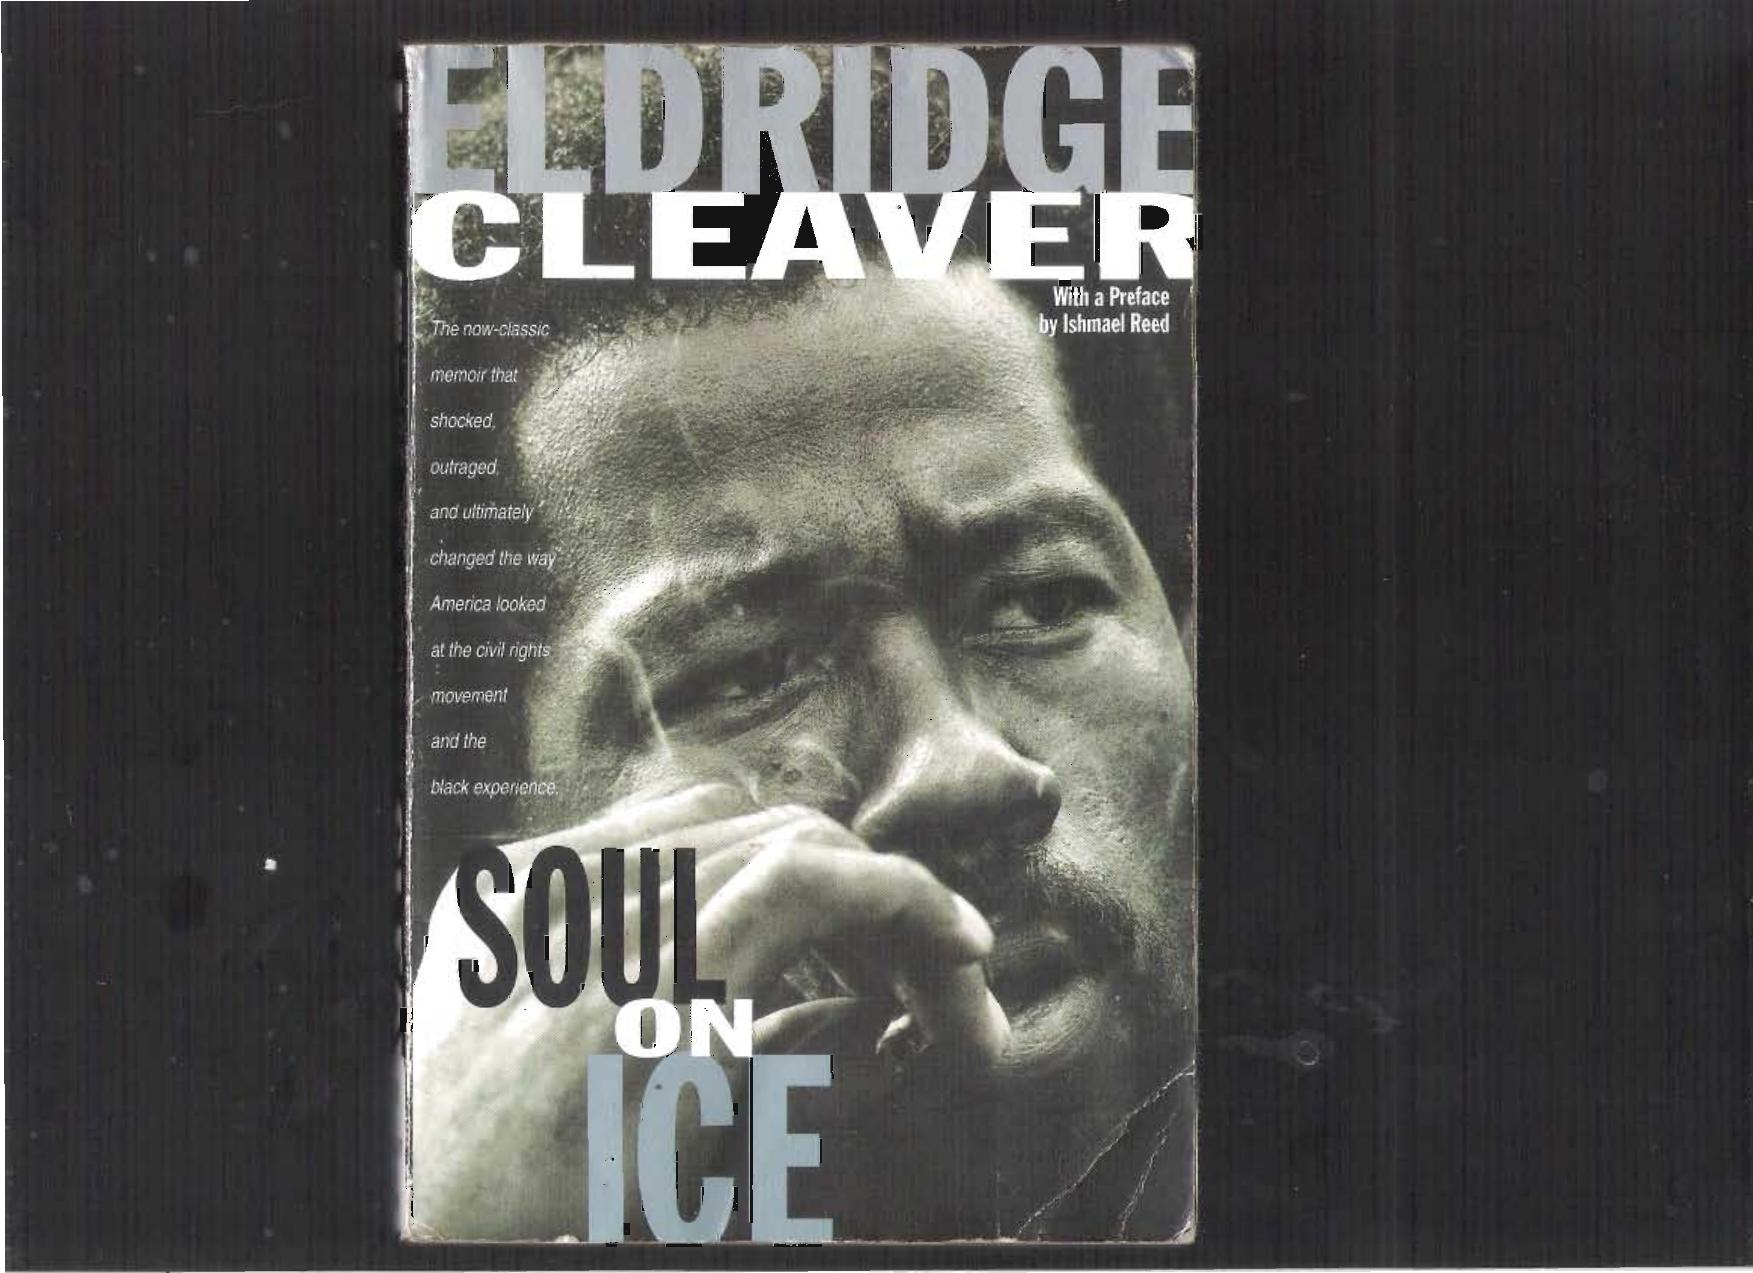 Soul on Ice by Eldridge Cleaver